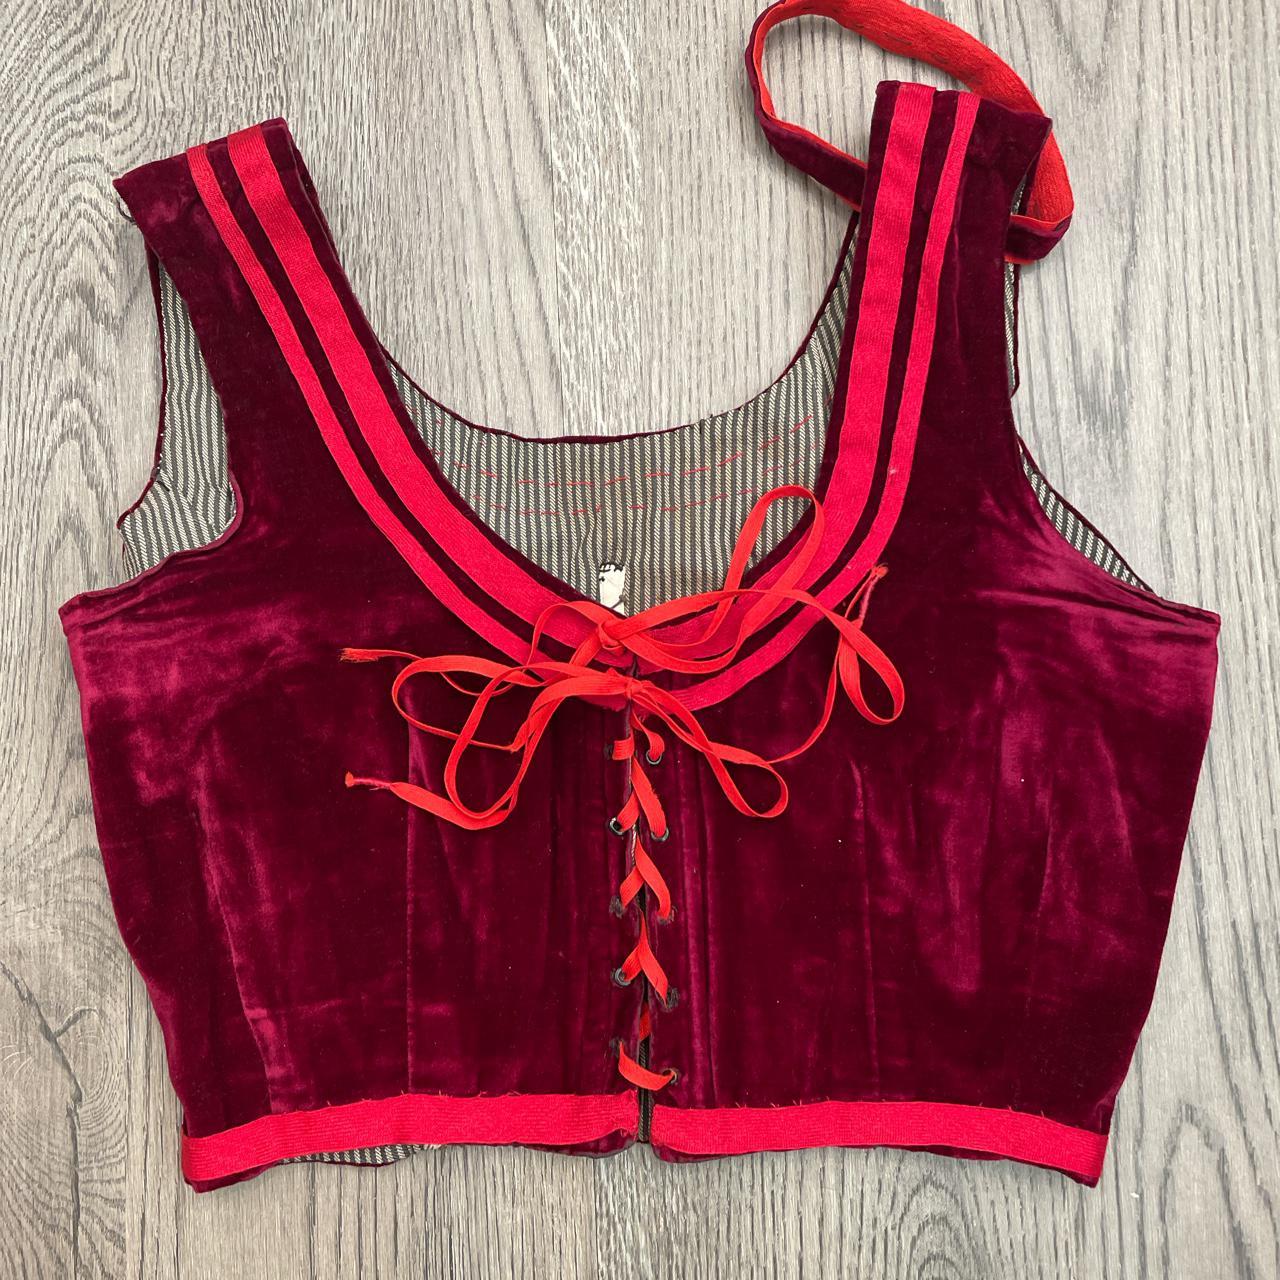 Product Image 2 - Red velvet corset style bralette